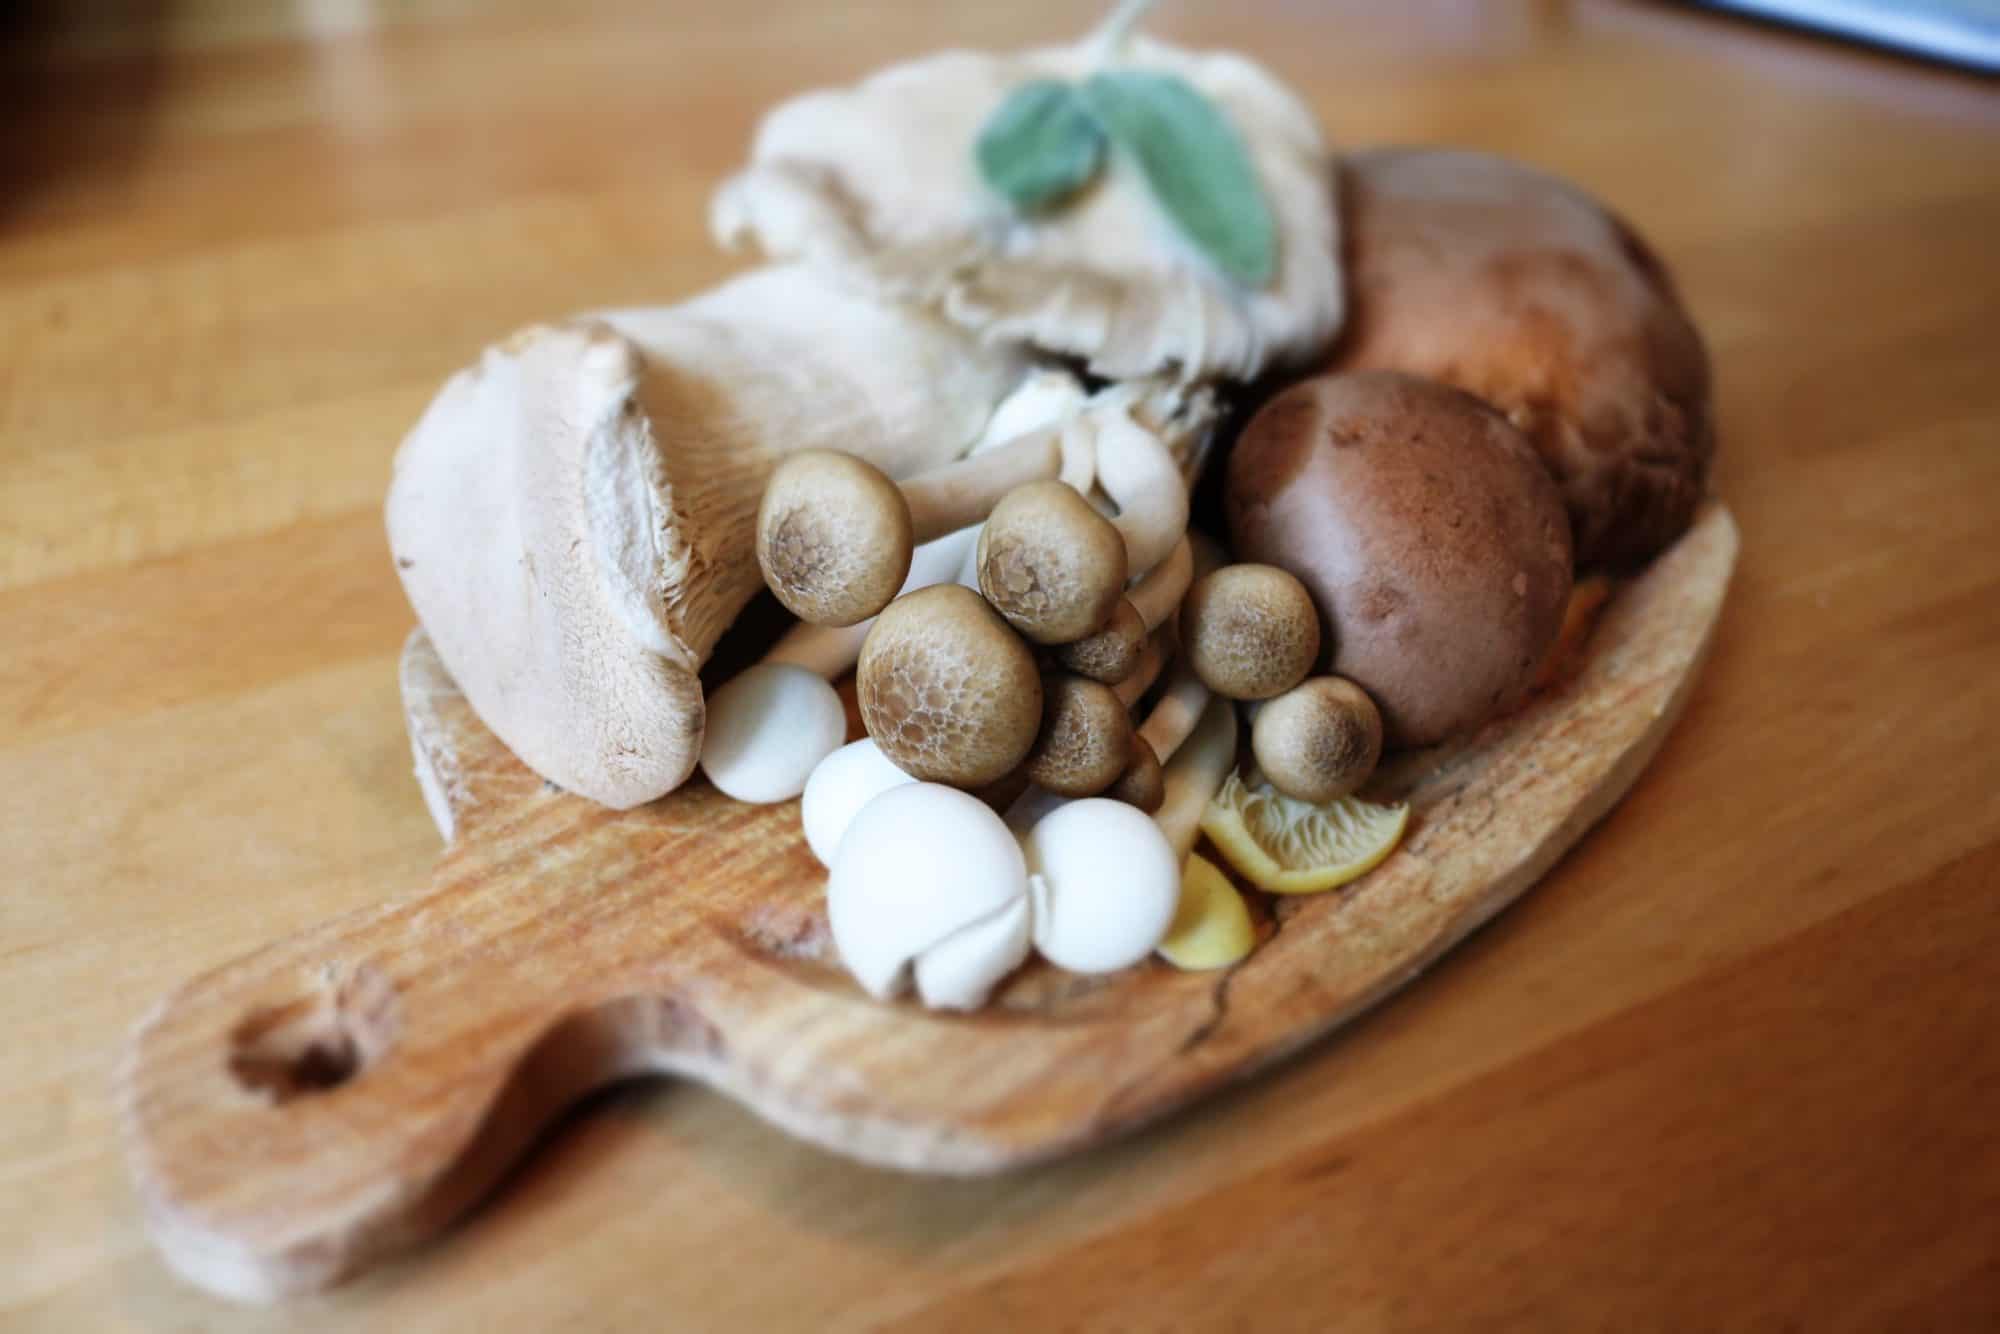 mushrooms in pregnancy